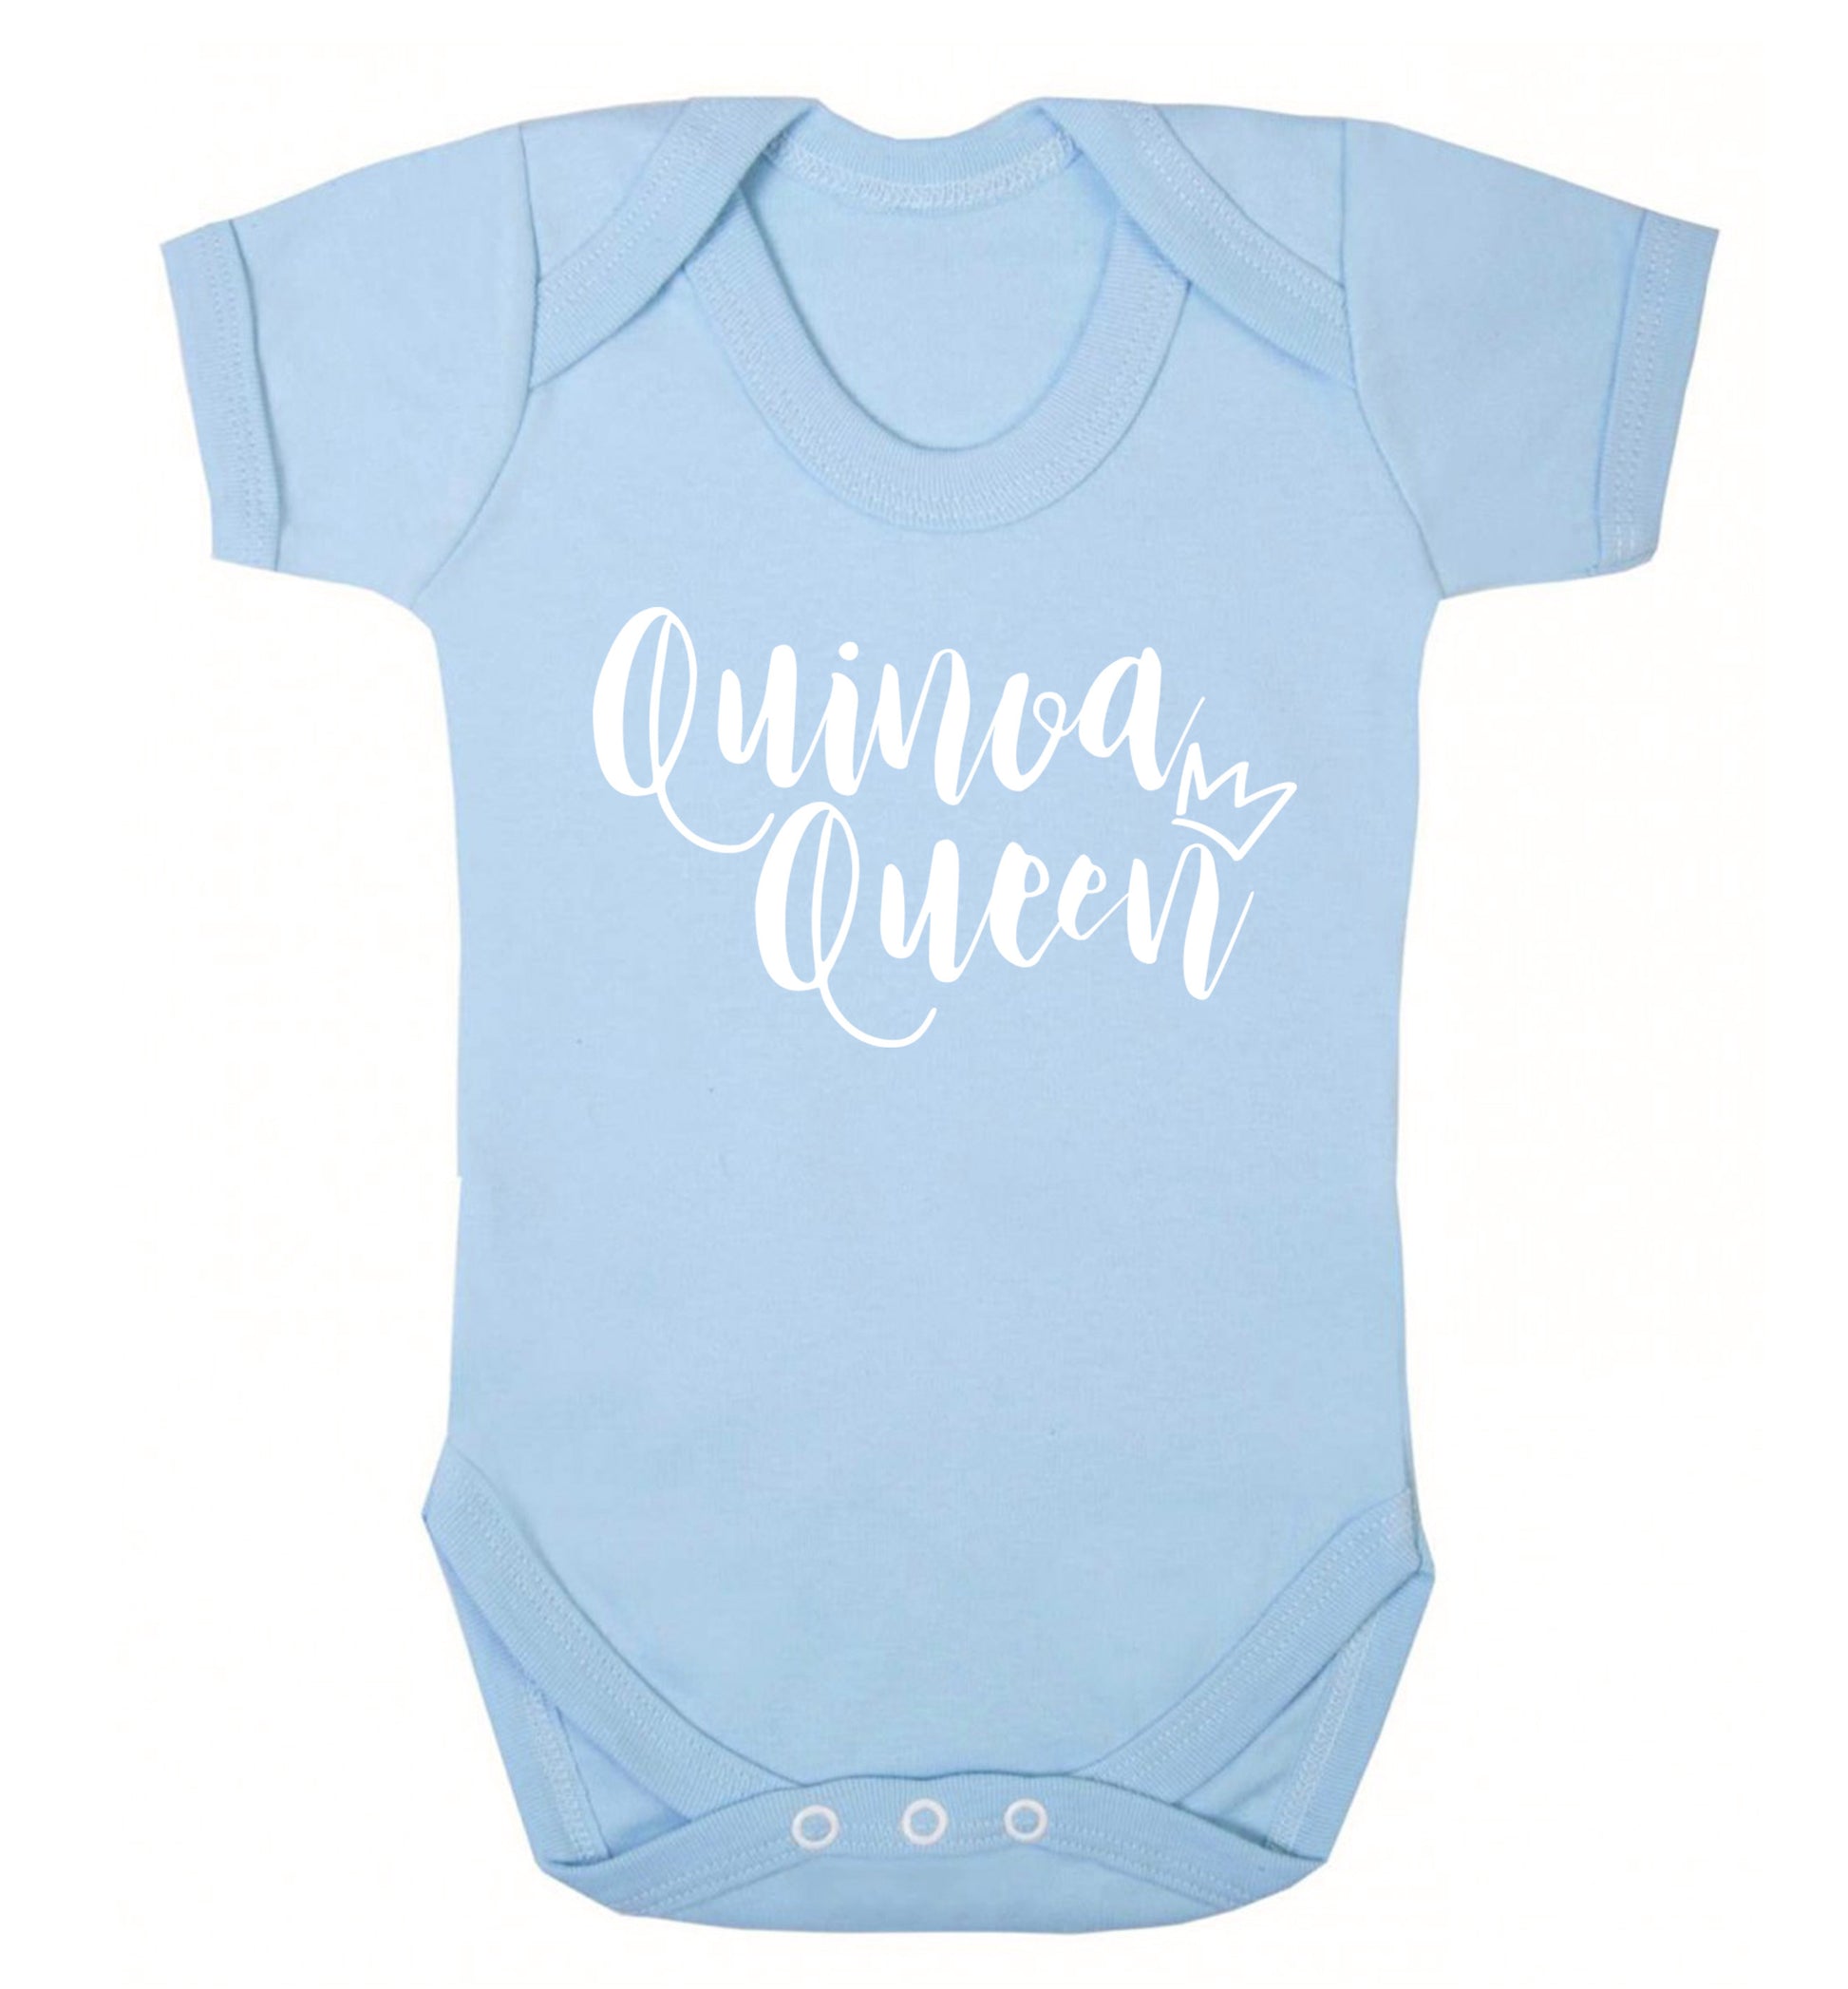 Quinoa Queen Baby Vest pale blue 18-24 months